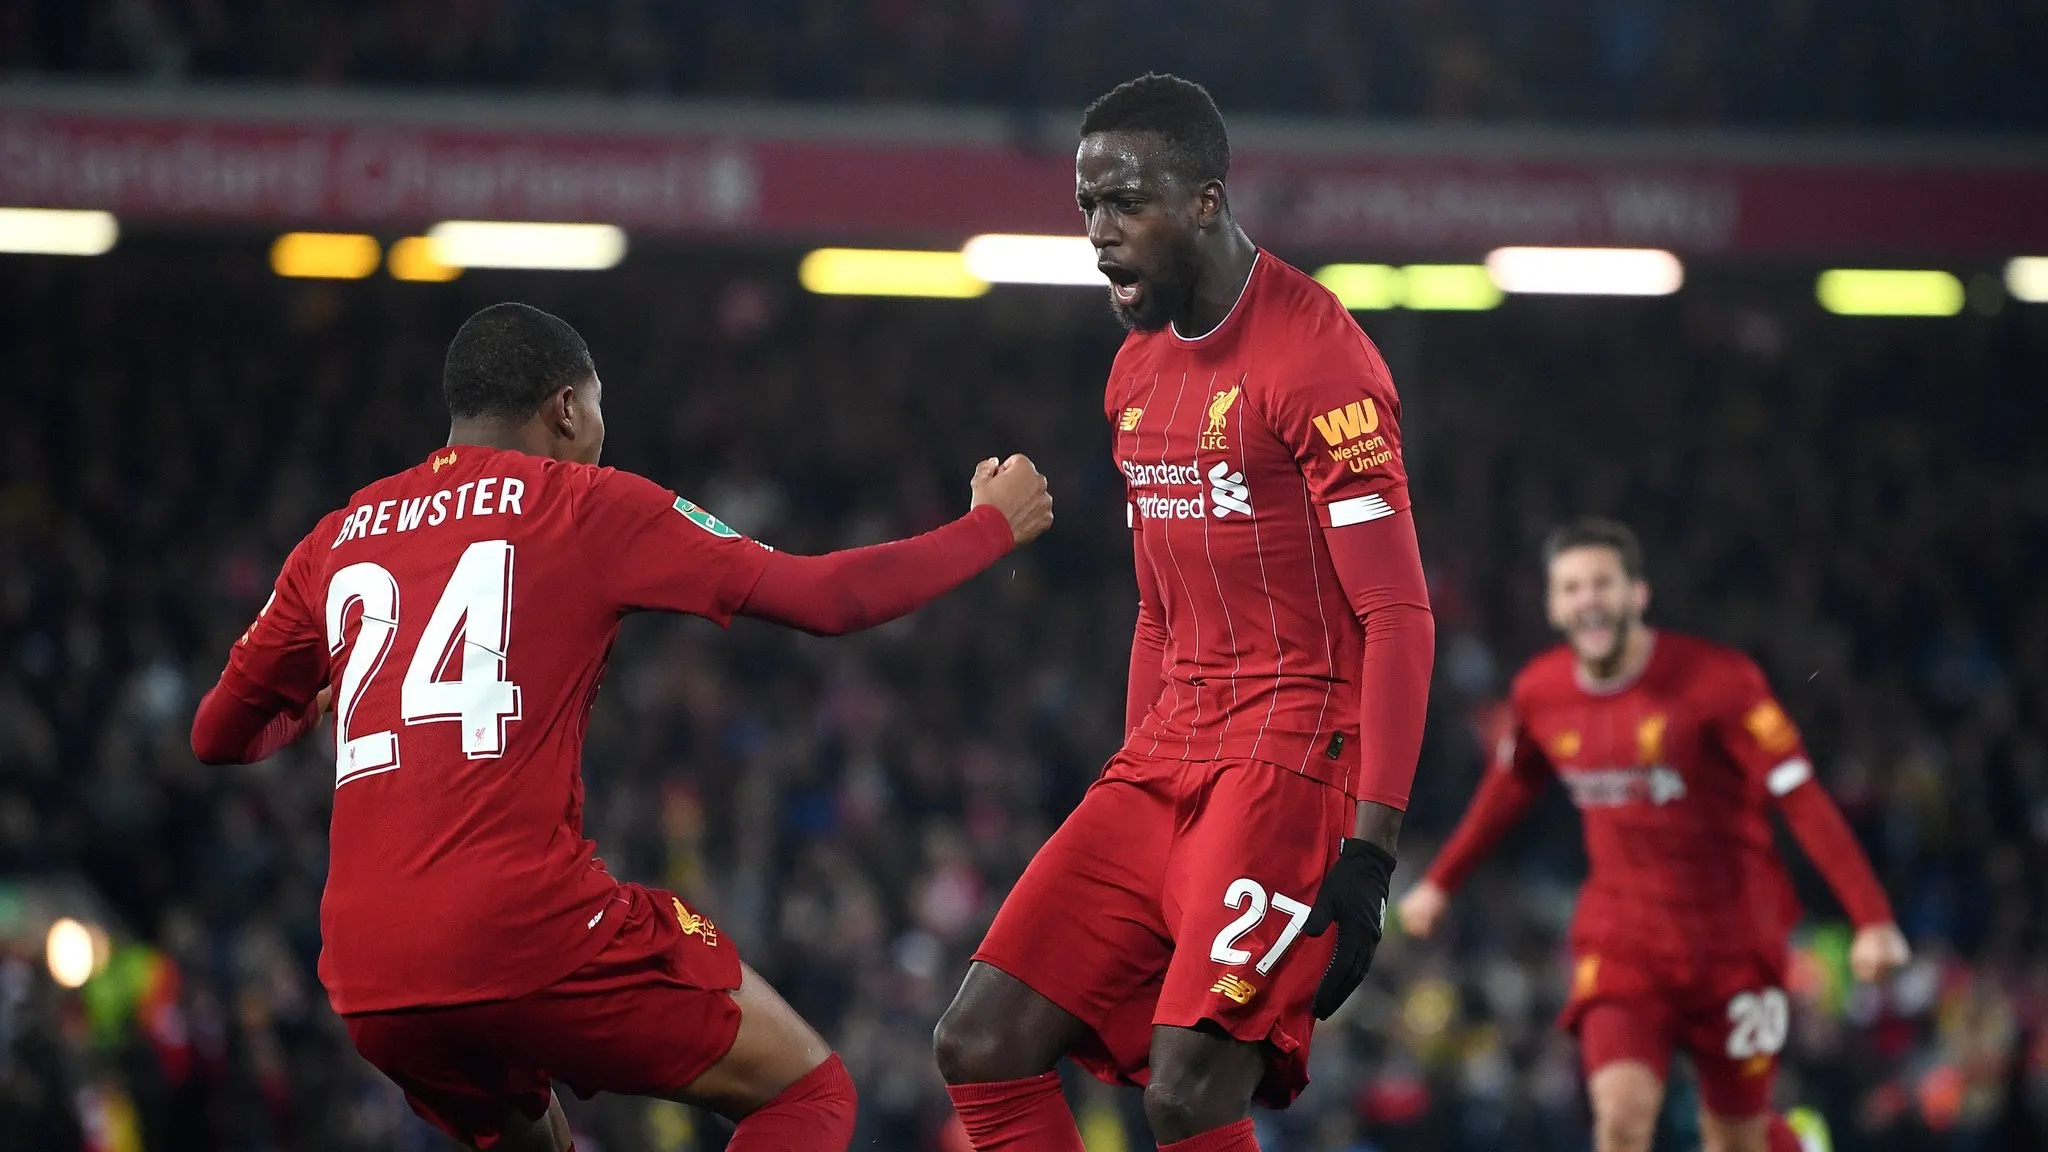 Diễn biến Liverpool vs Arsenal - Cup Liên đoàn Anh 2019/20: Trận cầu 10 bàn thắng